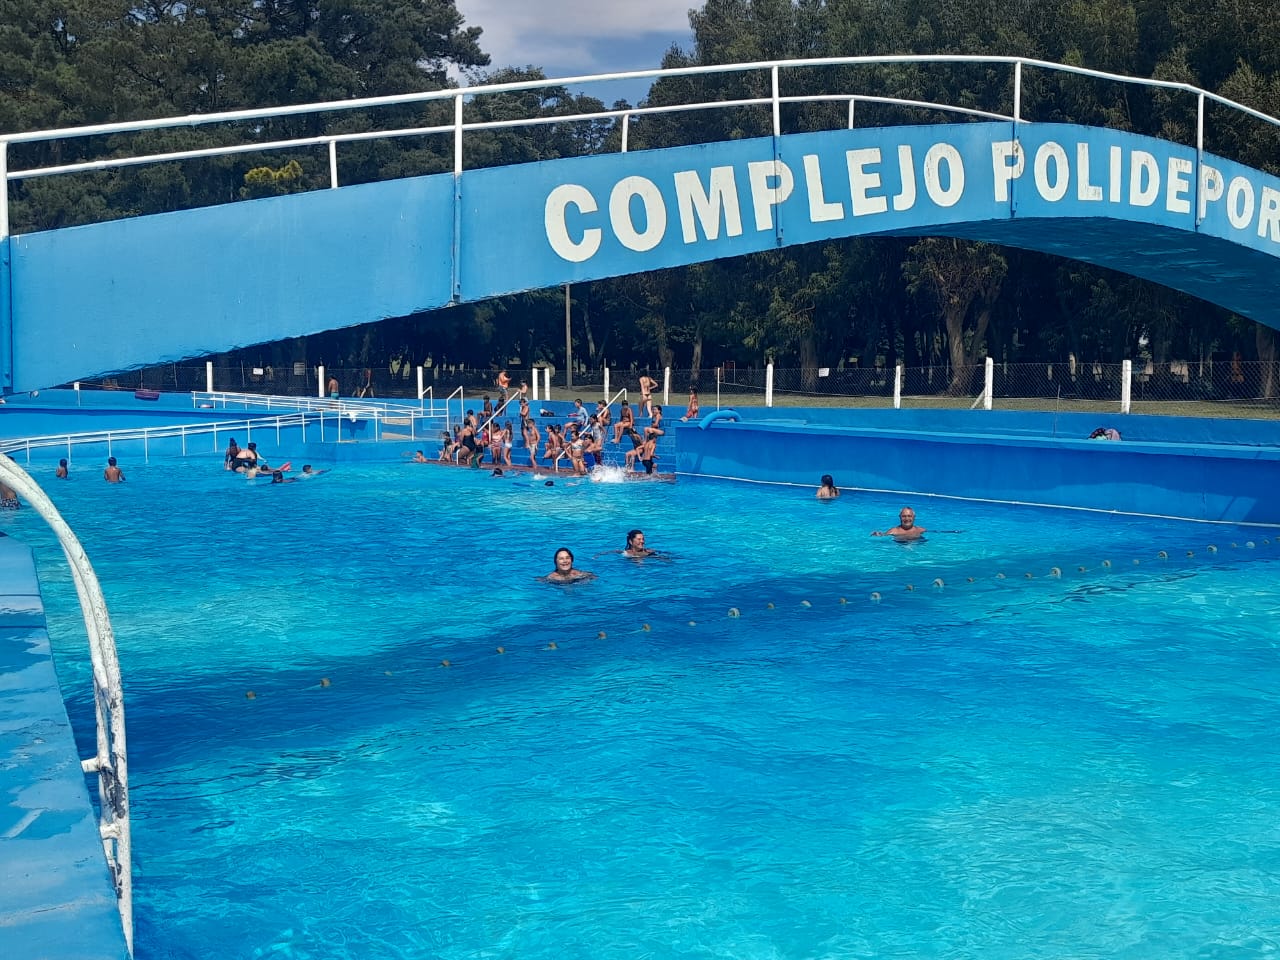 Último día de temporada en el natatorio del Complejo Polideportivo